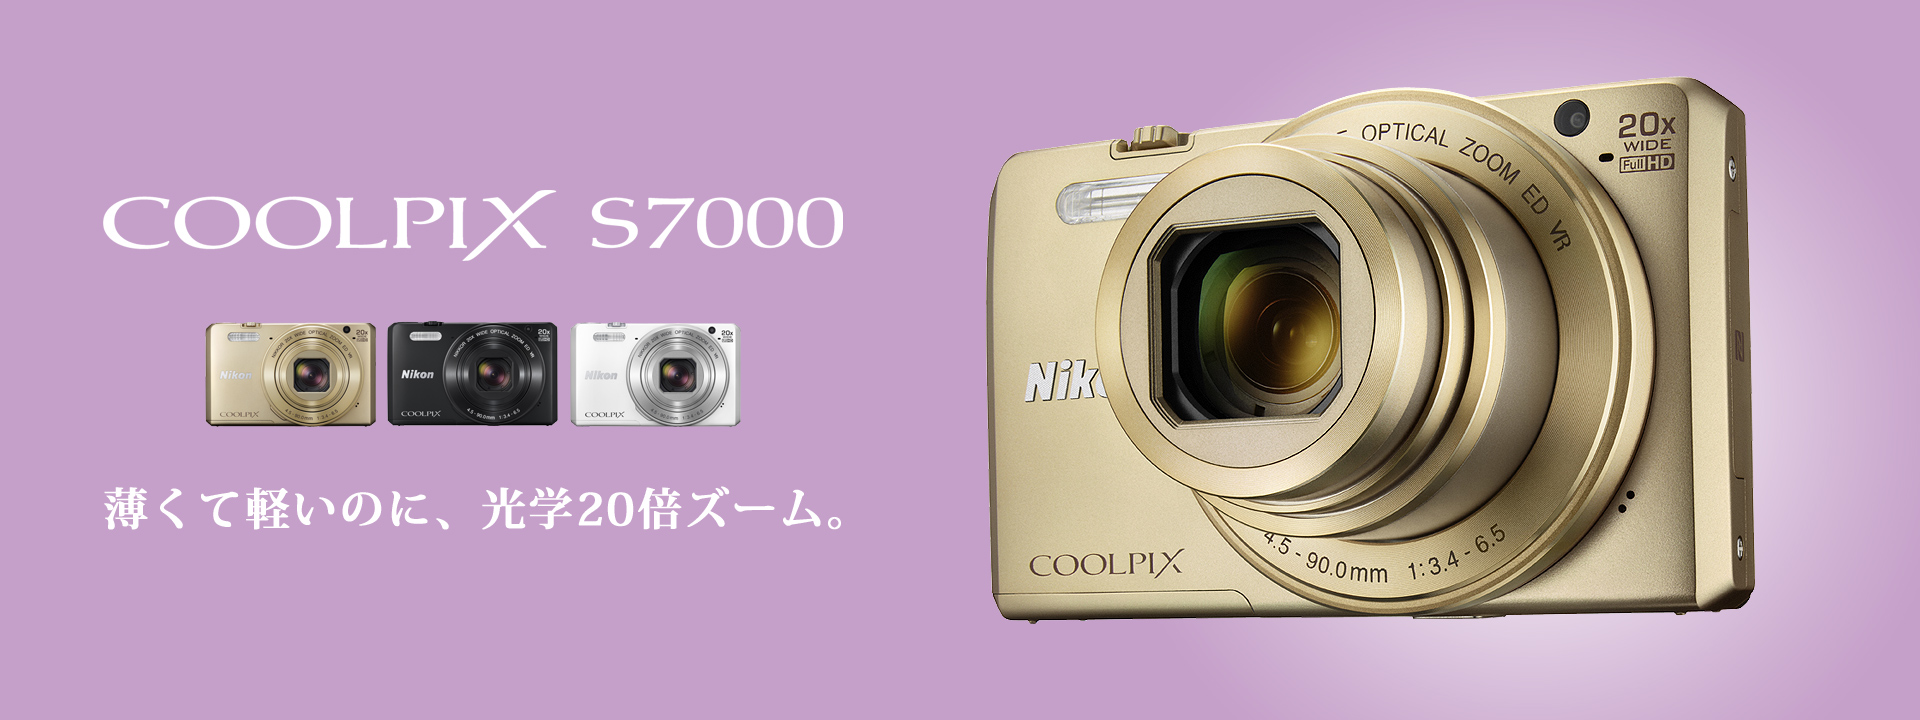 COOLPIX S7000 - 概要 | コンパクトデジタルカメラ | ニコンイメージング